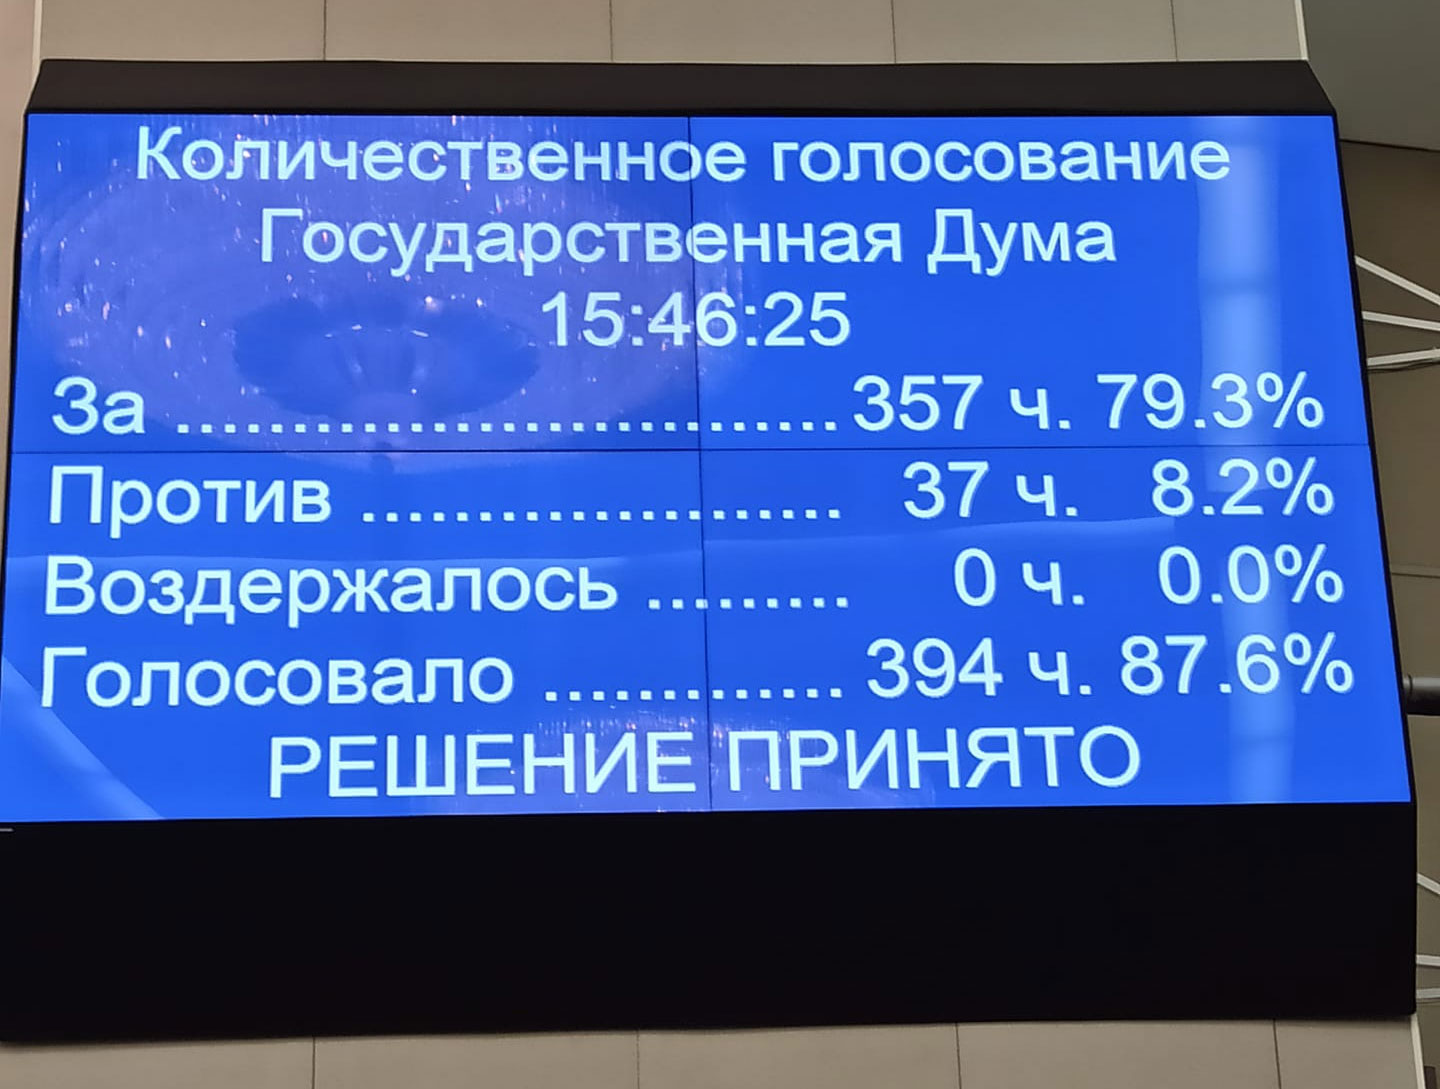 Итоги голосования по законопроекту о пожизненных гарантиях президенту РФ. Фото из Facebook депутата от КПРФ Веры Ганзя.